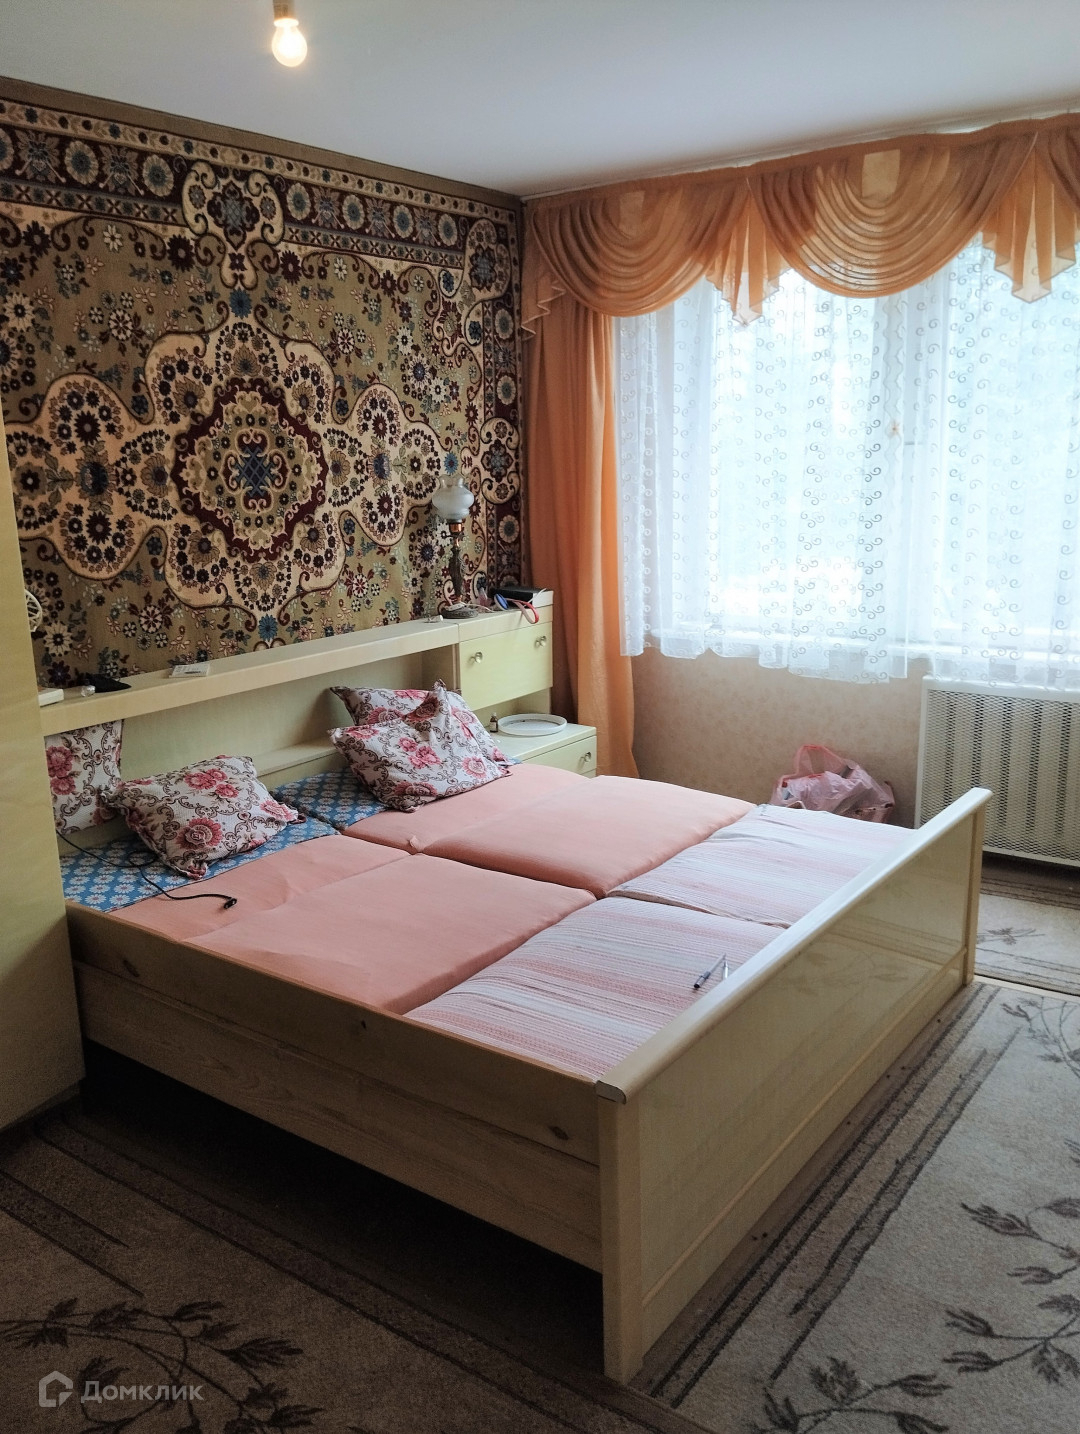 Снять квартиру в гусеве. Купить квартиру в Гусеве Калининградской области на авито 3 комнатную.